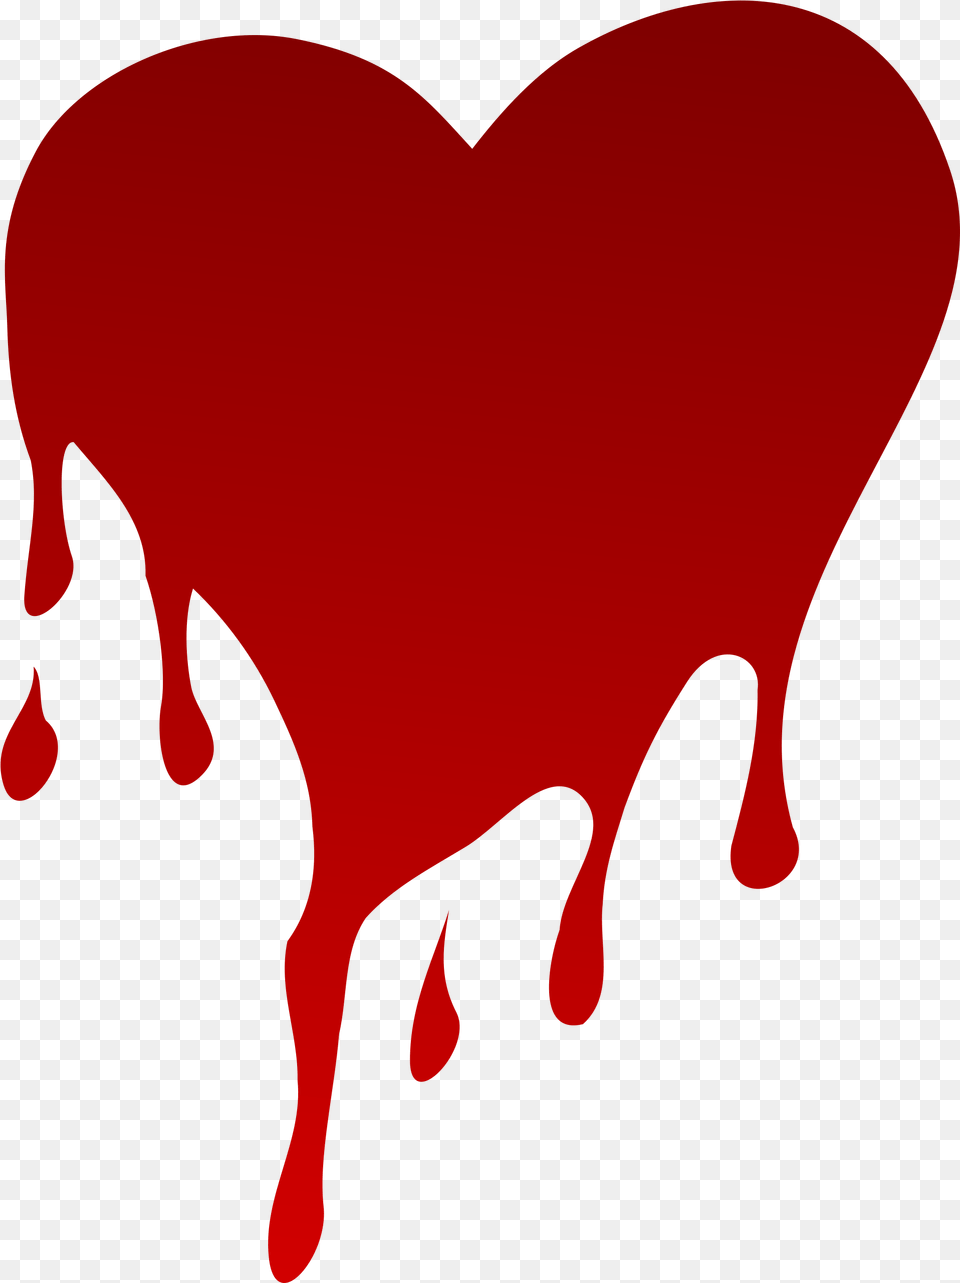 Heart Drip Transparent Onlygfxcom Dripping Broken Heart Png Image